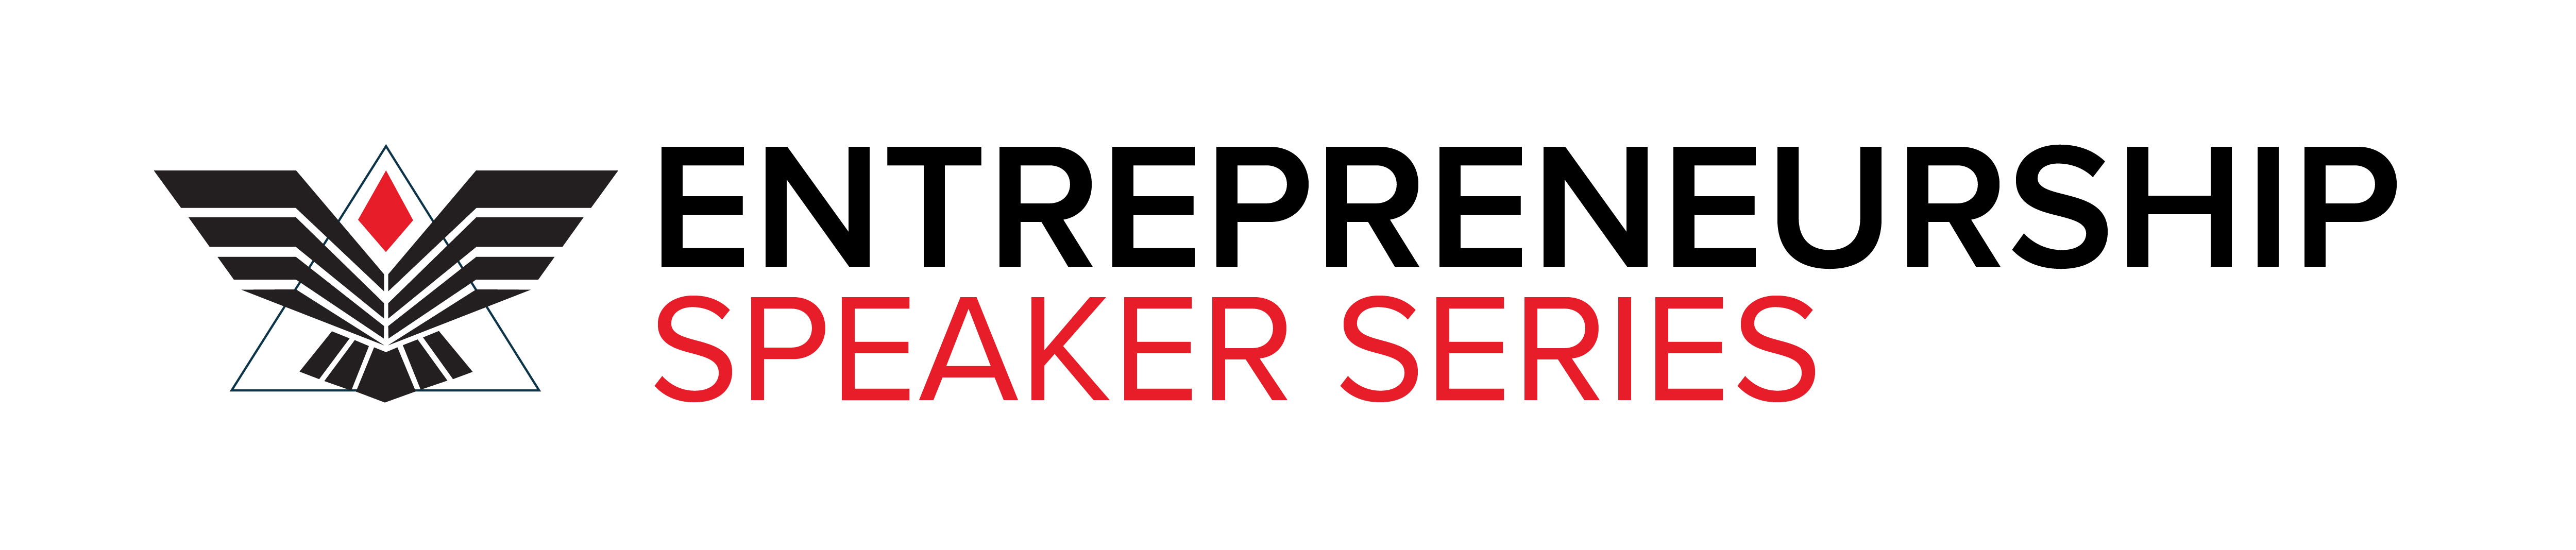 Entrepreneurship Speaker Series Logo